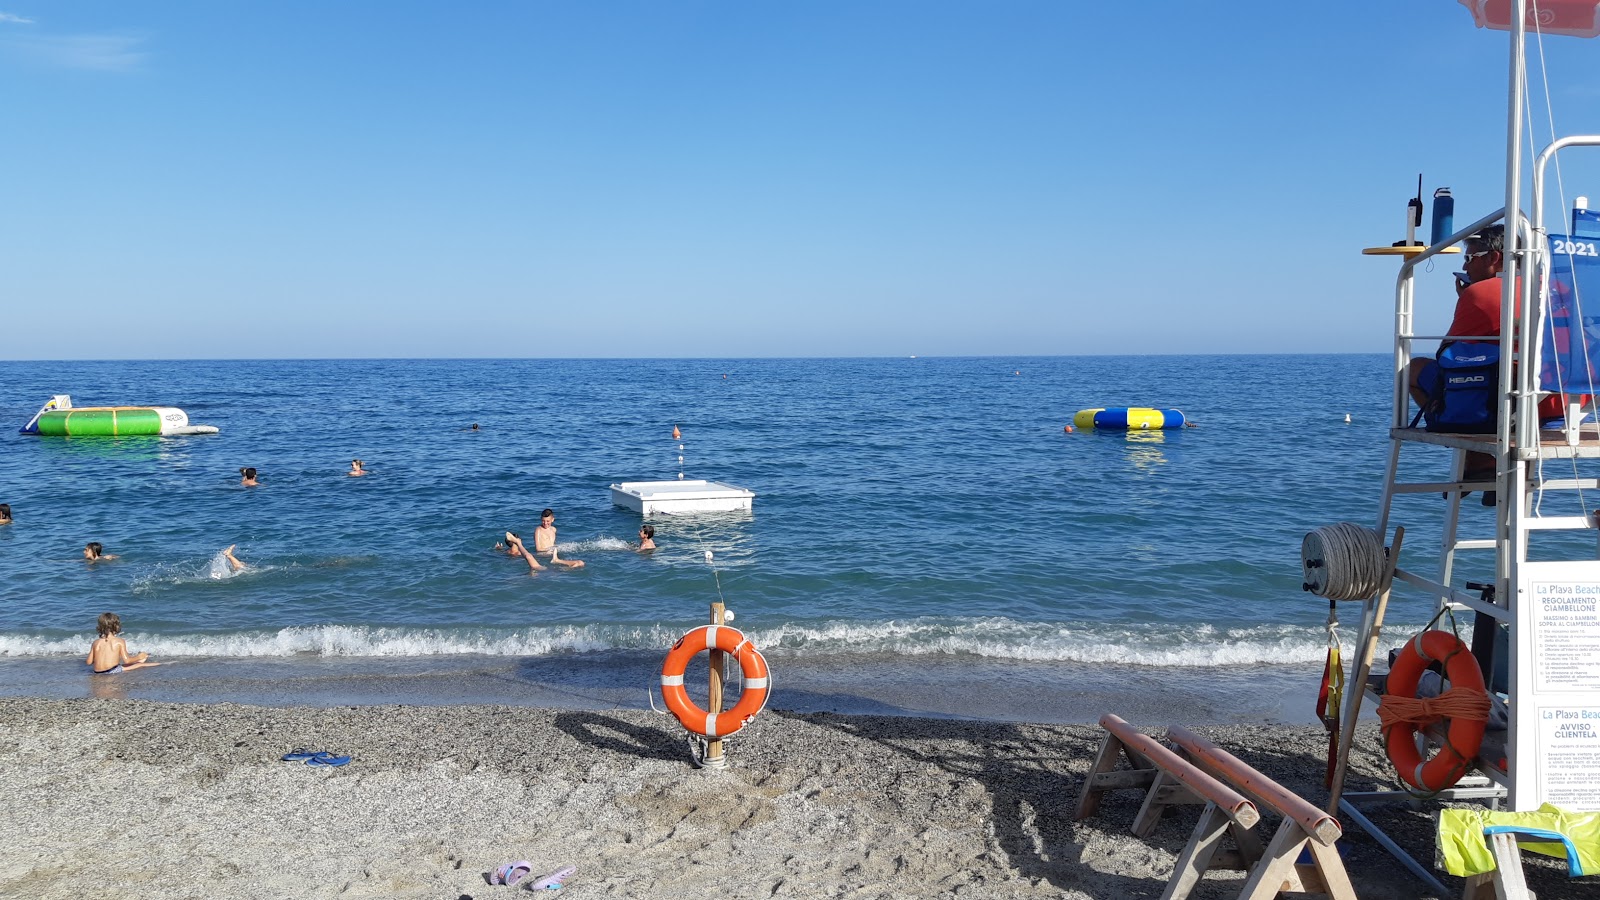 Spiaggia di Borghetto'in fotoğrafı plaj tatil beldesi alanı